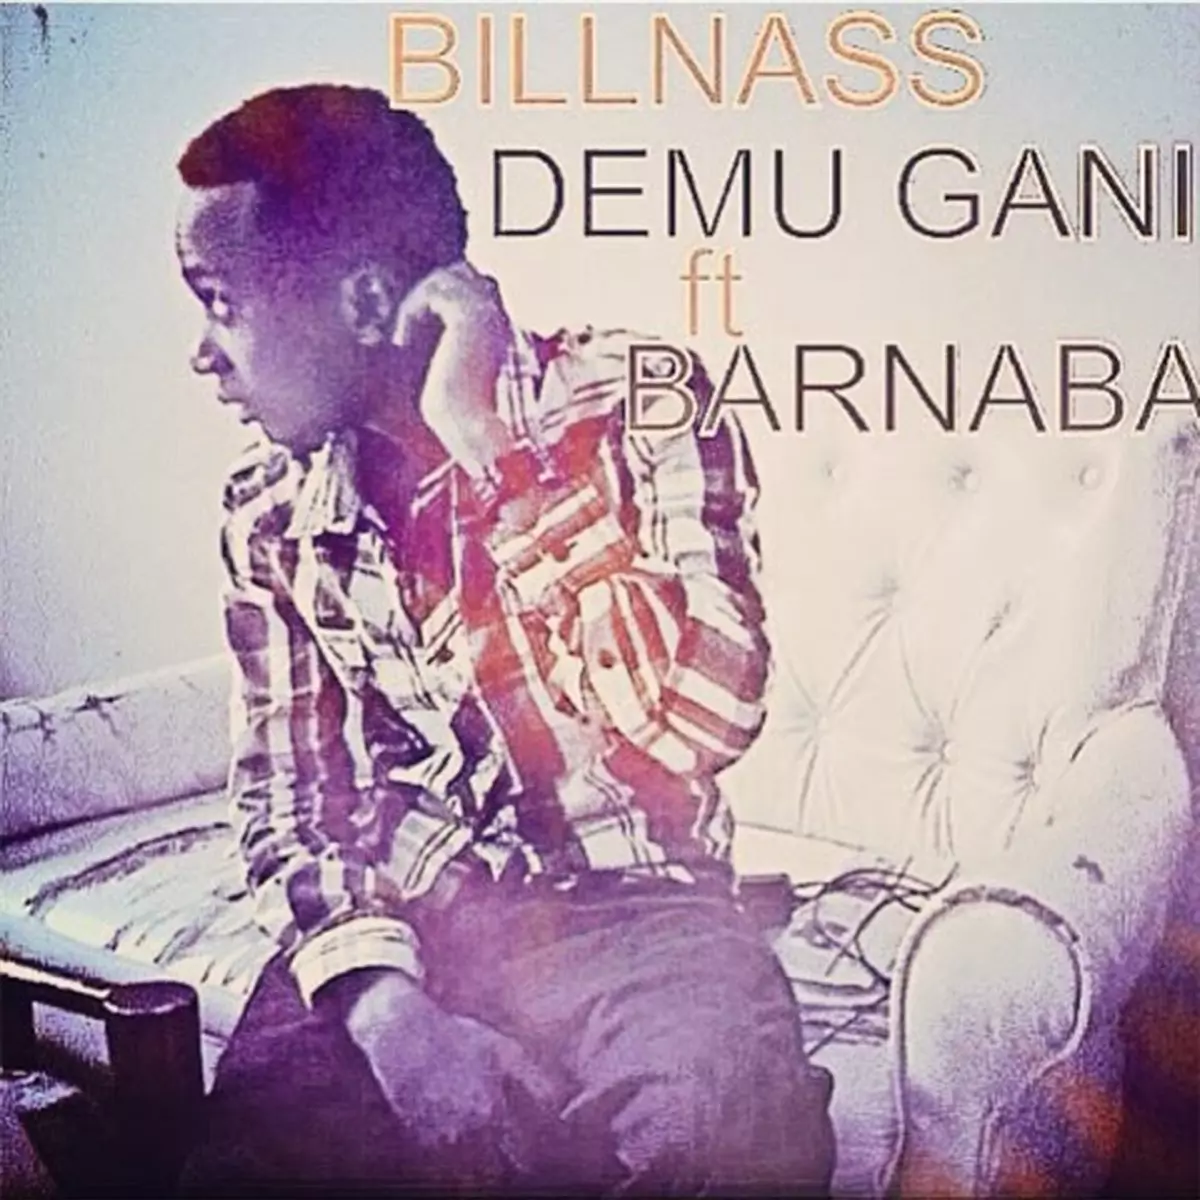 Demu Gani (feat. Barnaba) - Single by Billnass on Apple Music